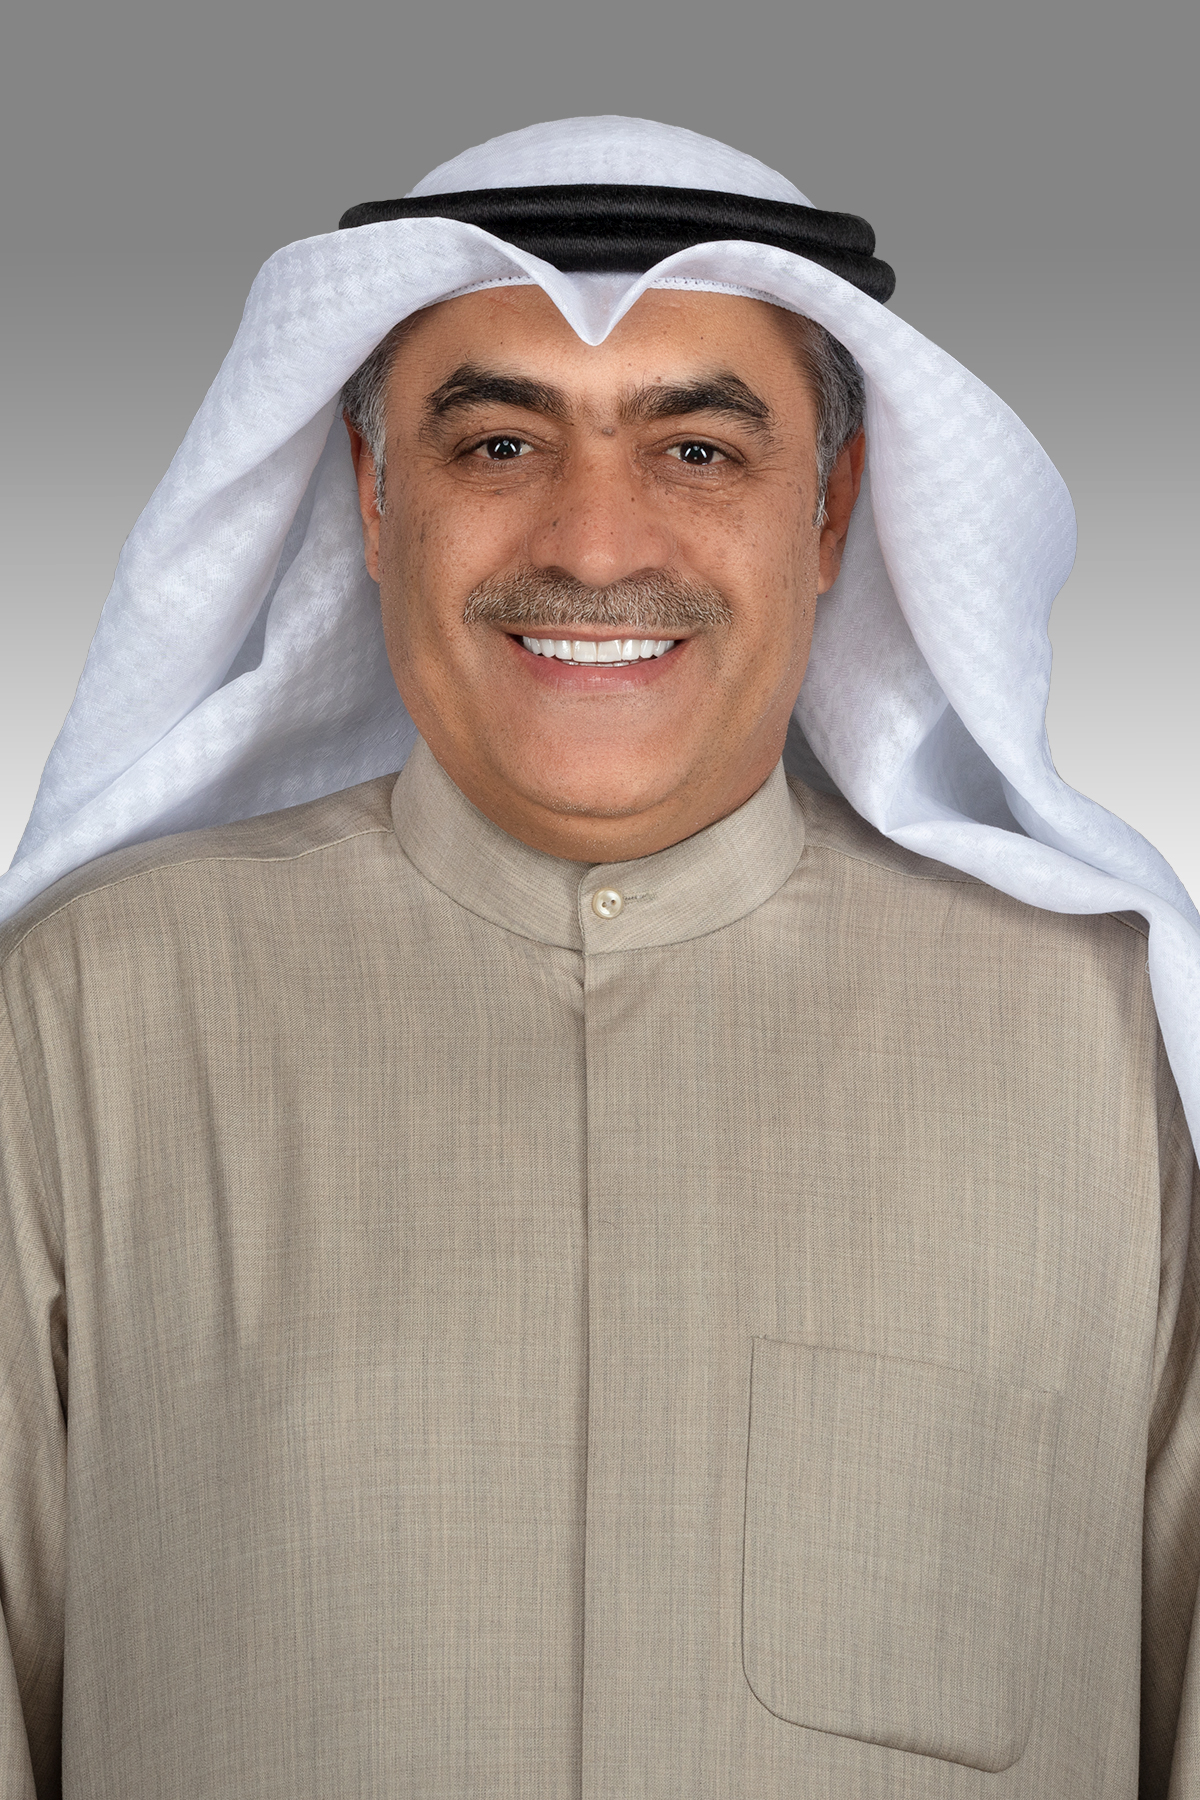 خالد العنزي يوجه سؤالا إلى وزير الداخلية